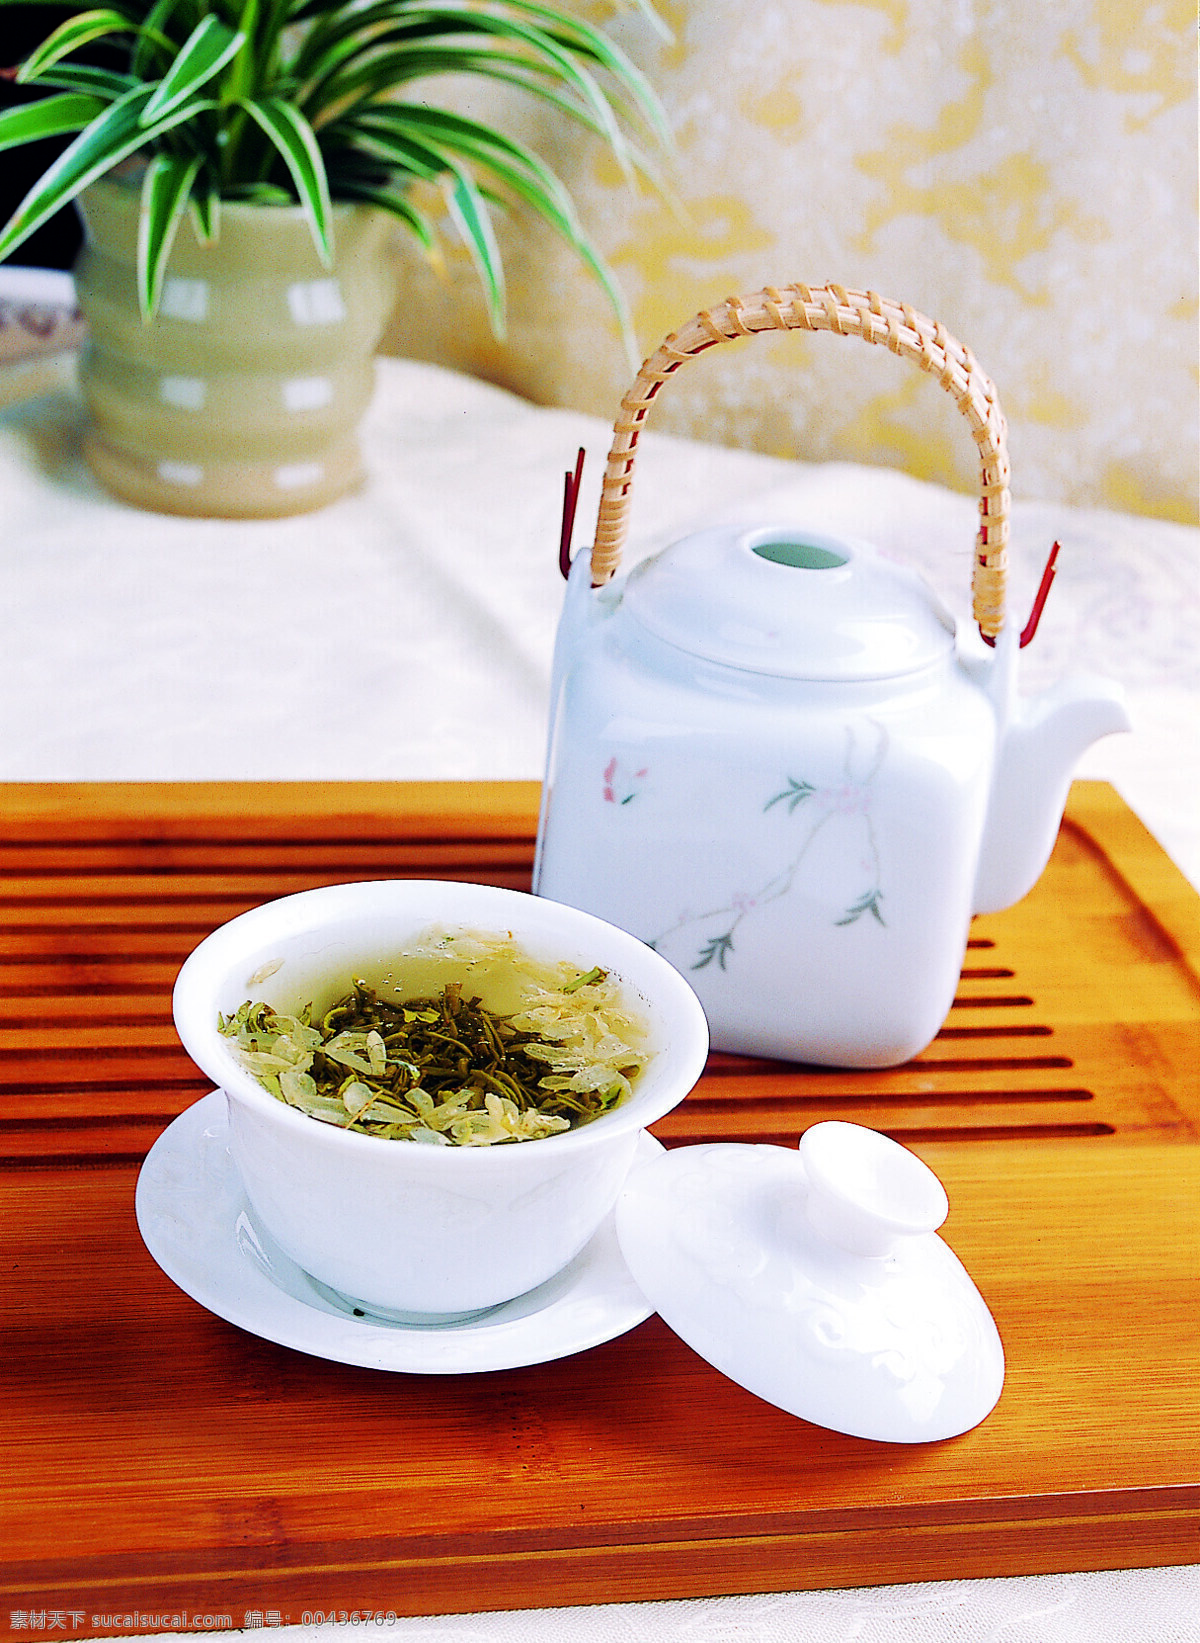 茉莉花茶 杯托 杯身 杯盖 茶壶 茶盘 花 花盆 盆栽 布 水 茶桌 摄影图库